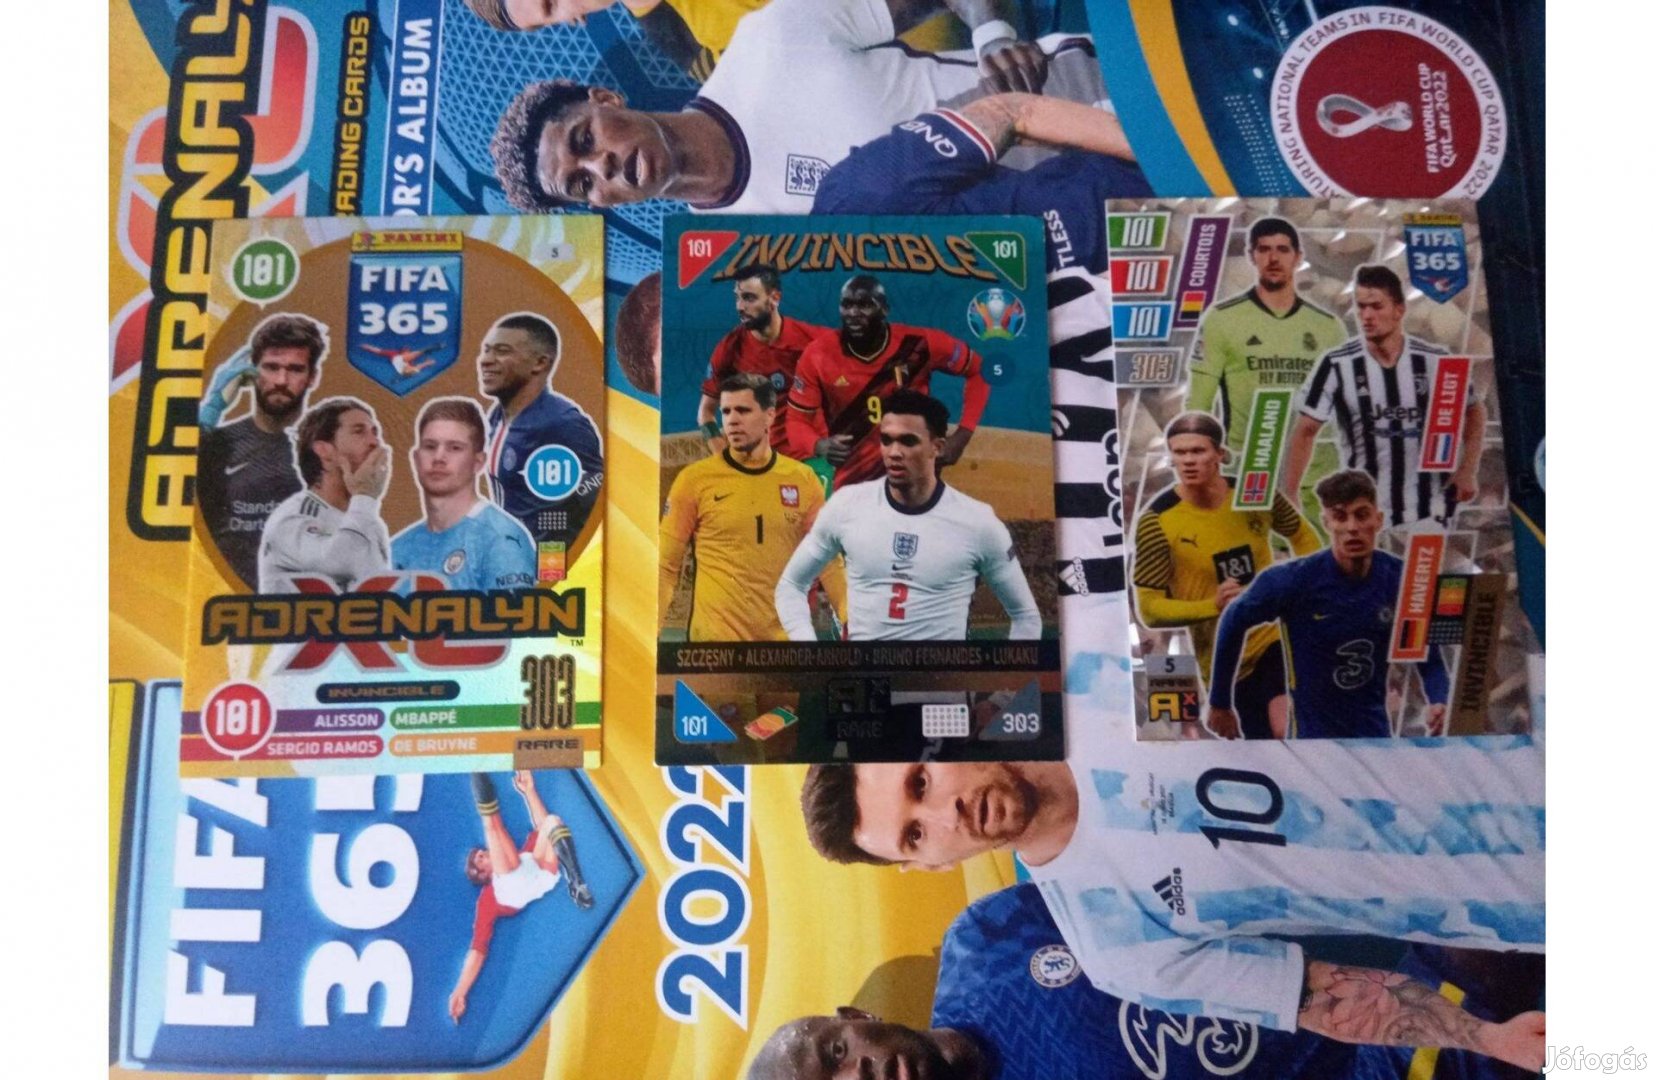 Fifa 365 és Euro 2020 Invincible focis kártya